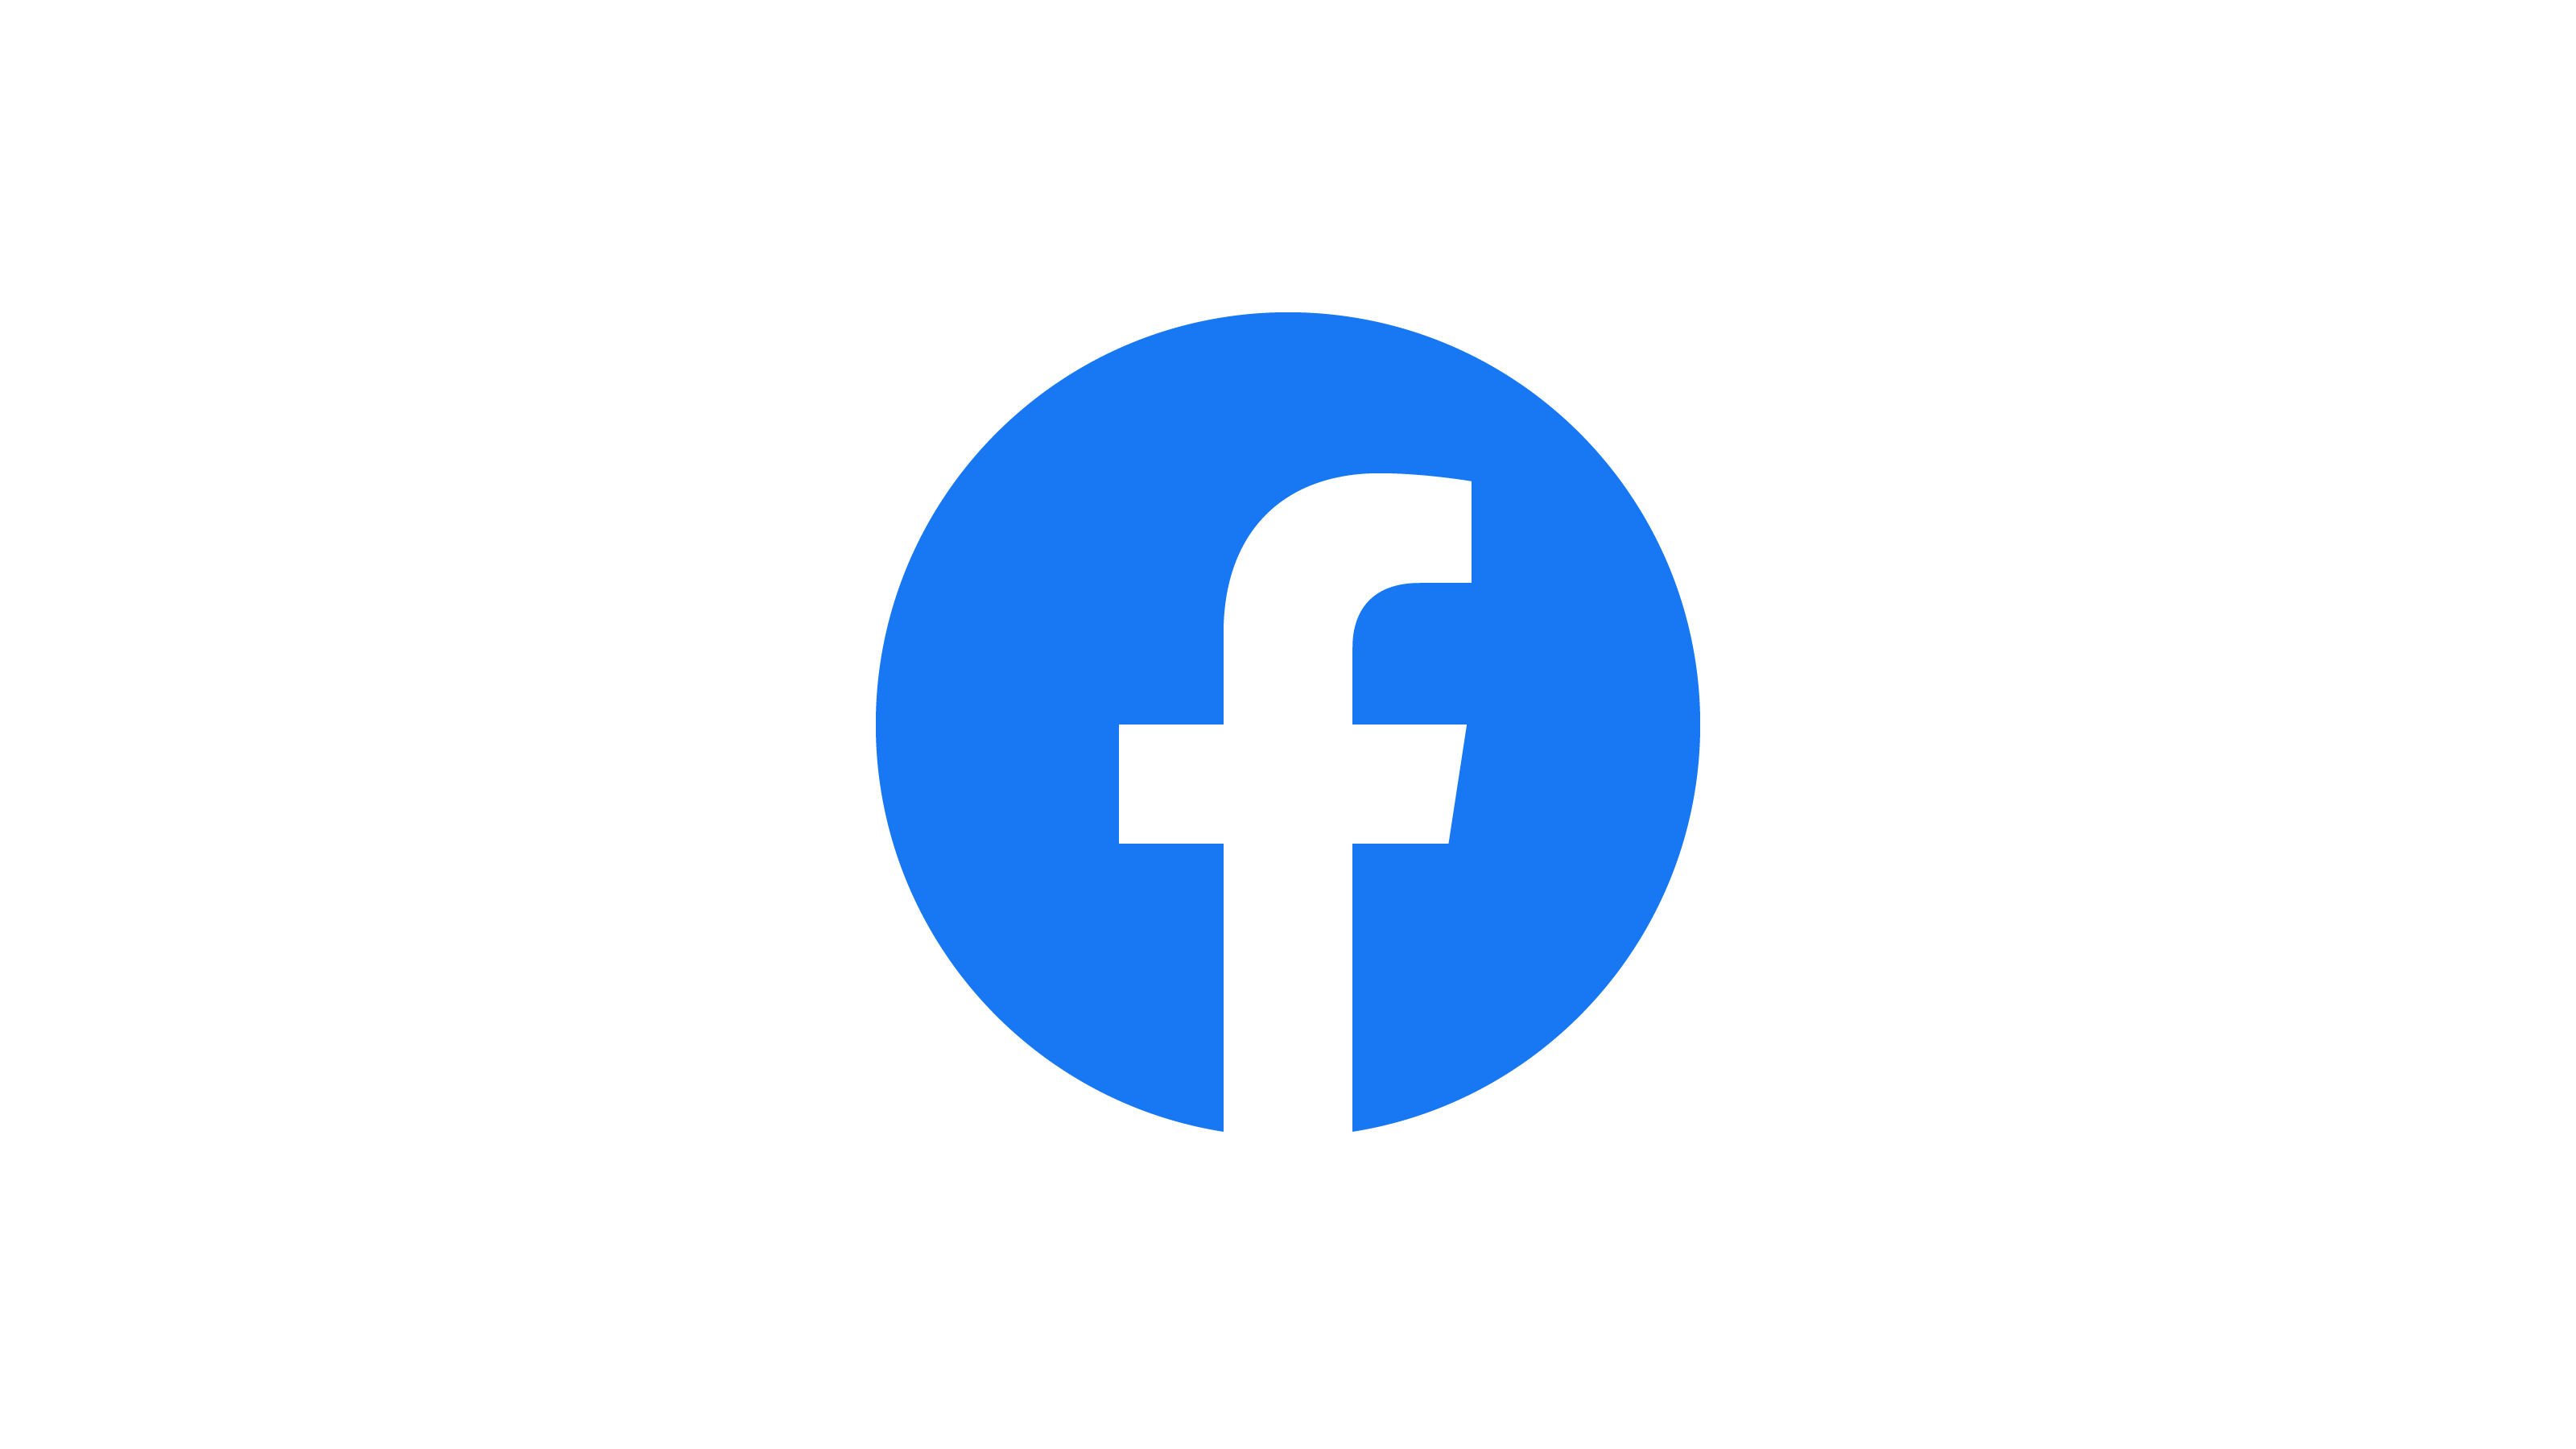 Facebook-Logo: Weißer Buchstabe F in blauem Kreis auf weißem Hintergrund